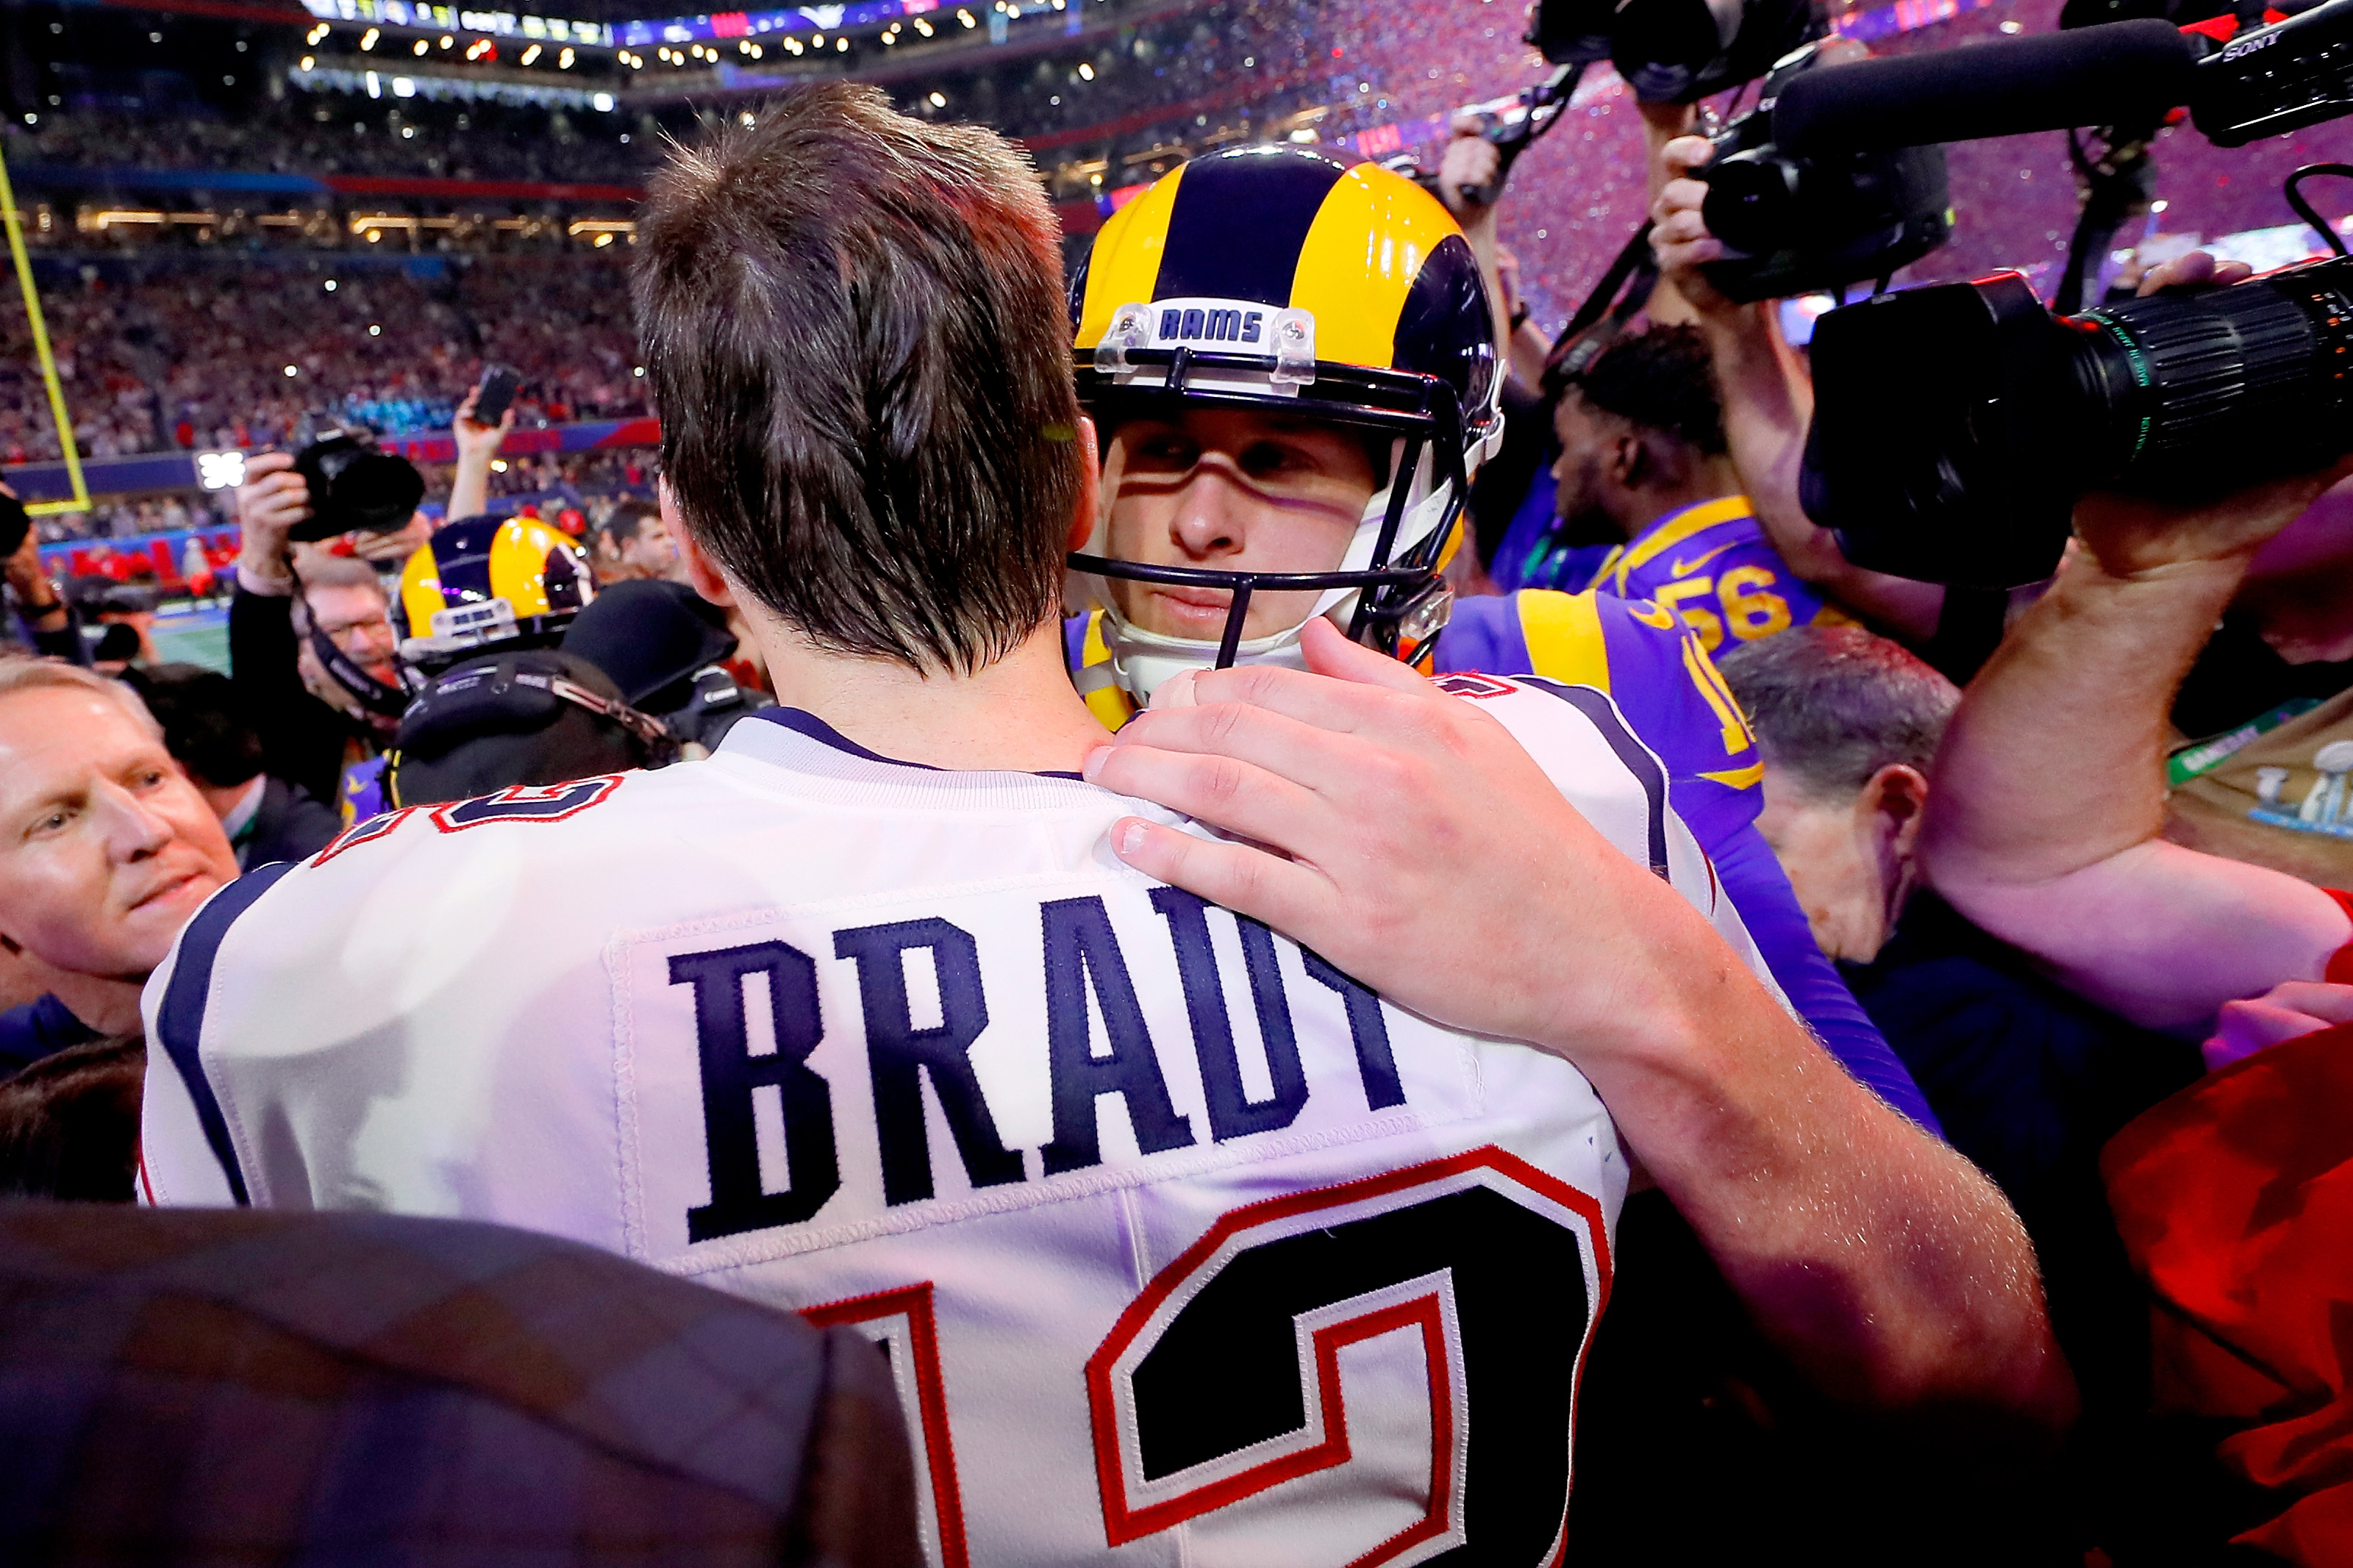 NFL: Rams sonham com feito obtido apenas por time de Tom Brady na história  da liga - Jornal O Globo